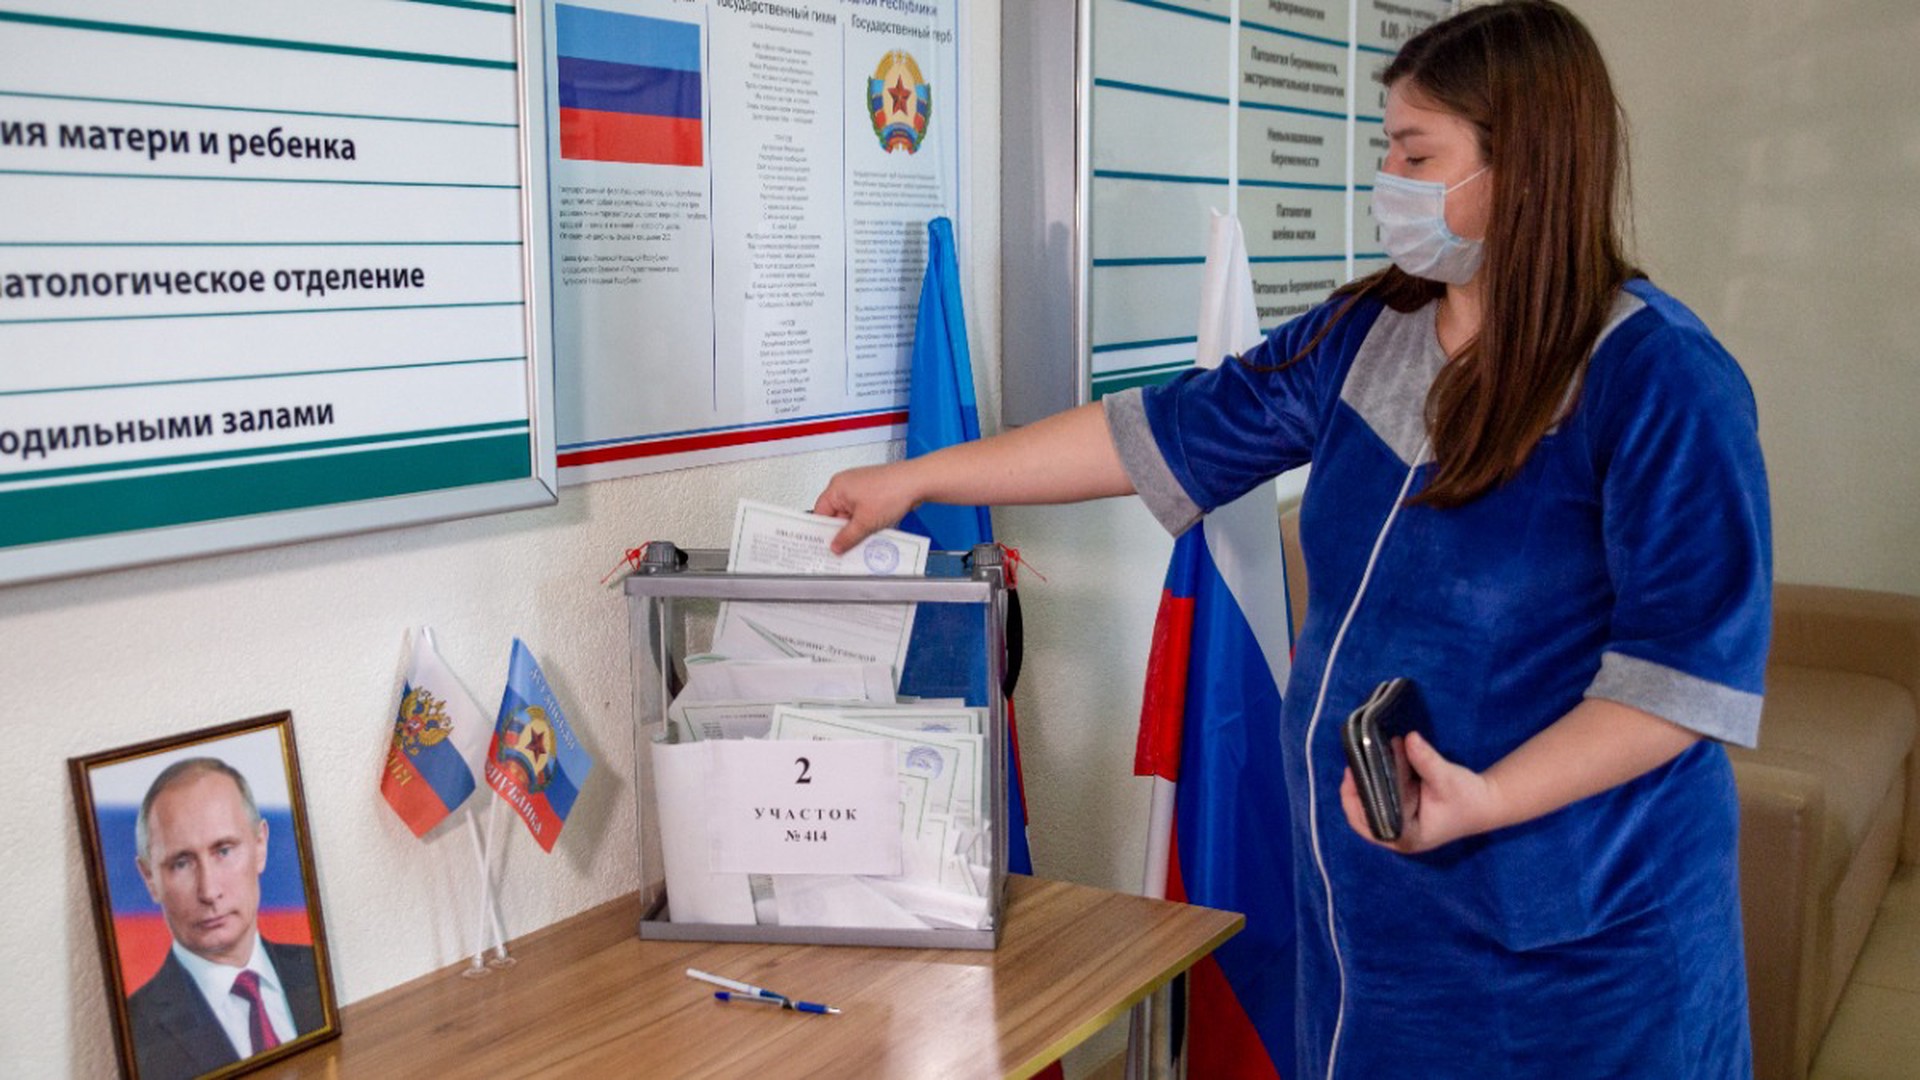 Украинские провокаторы угрожали поджечь избирательные участки в Старобельском районе